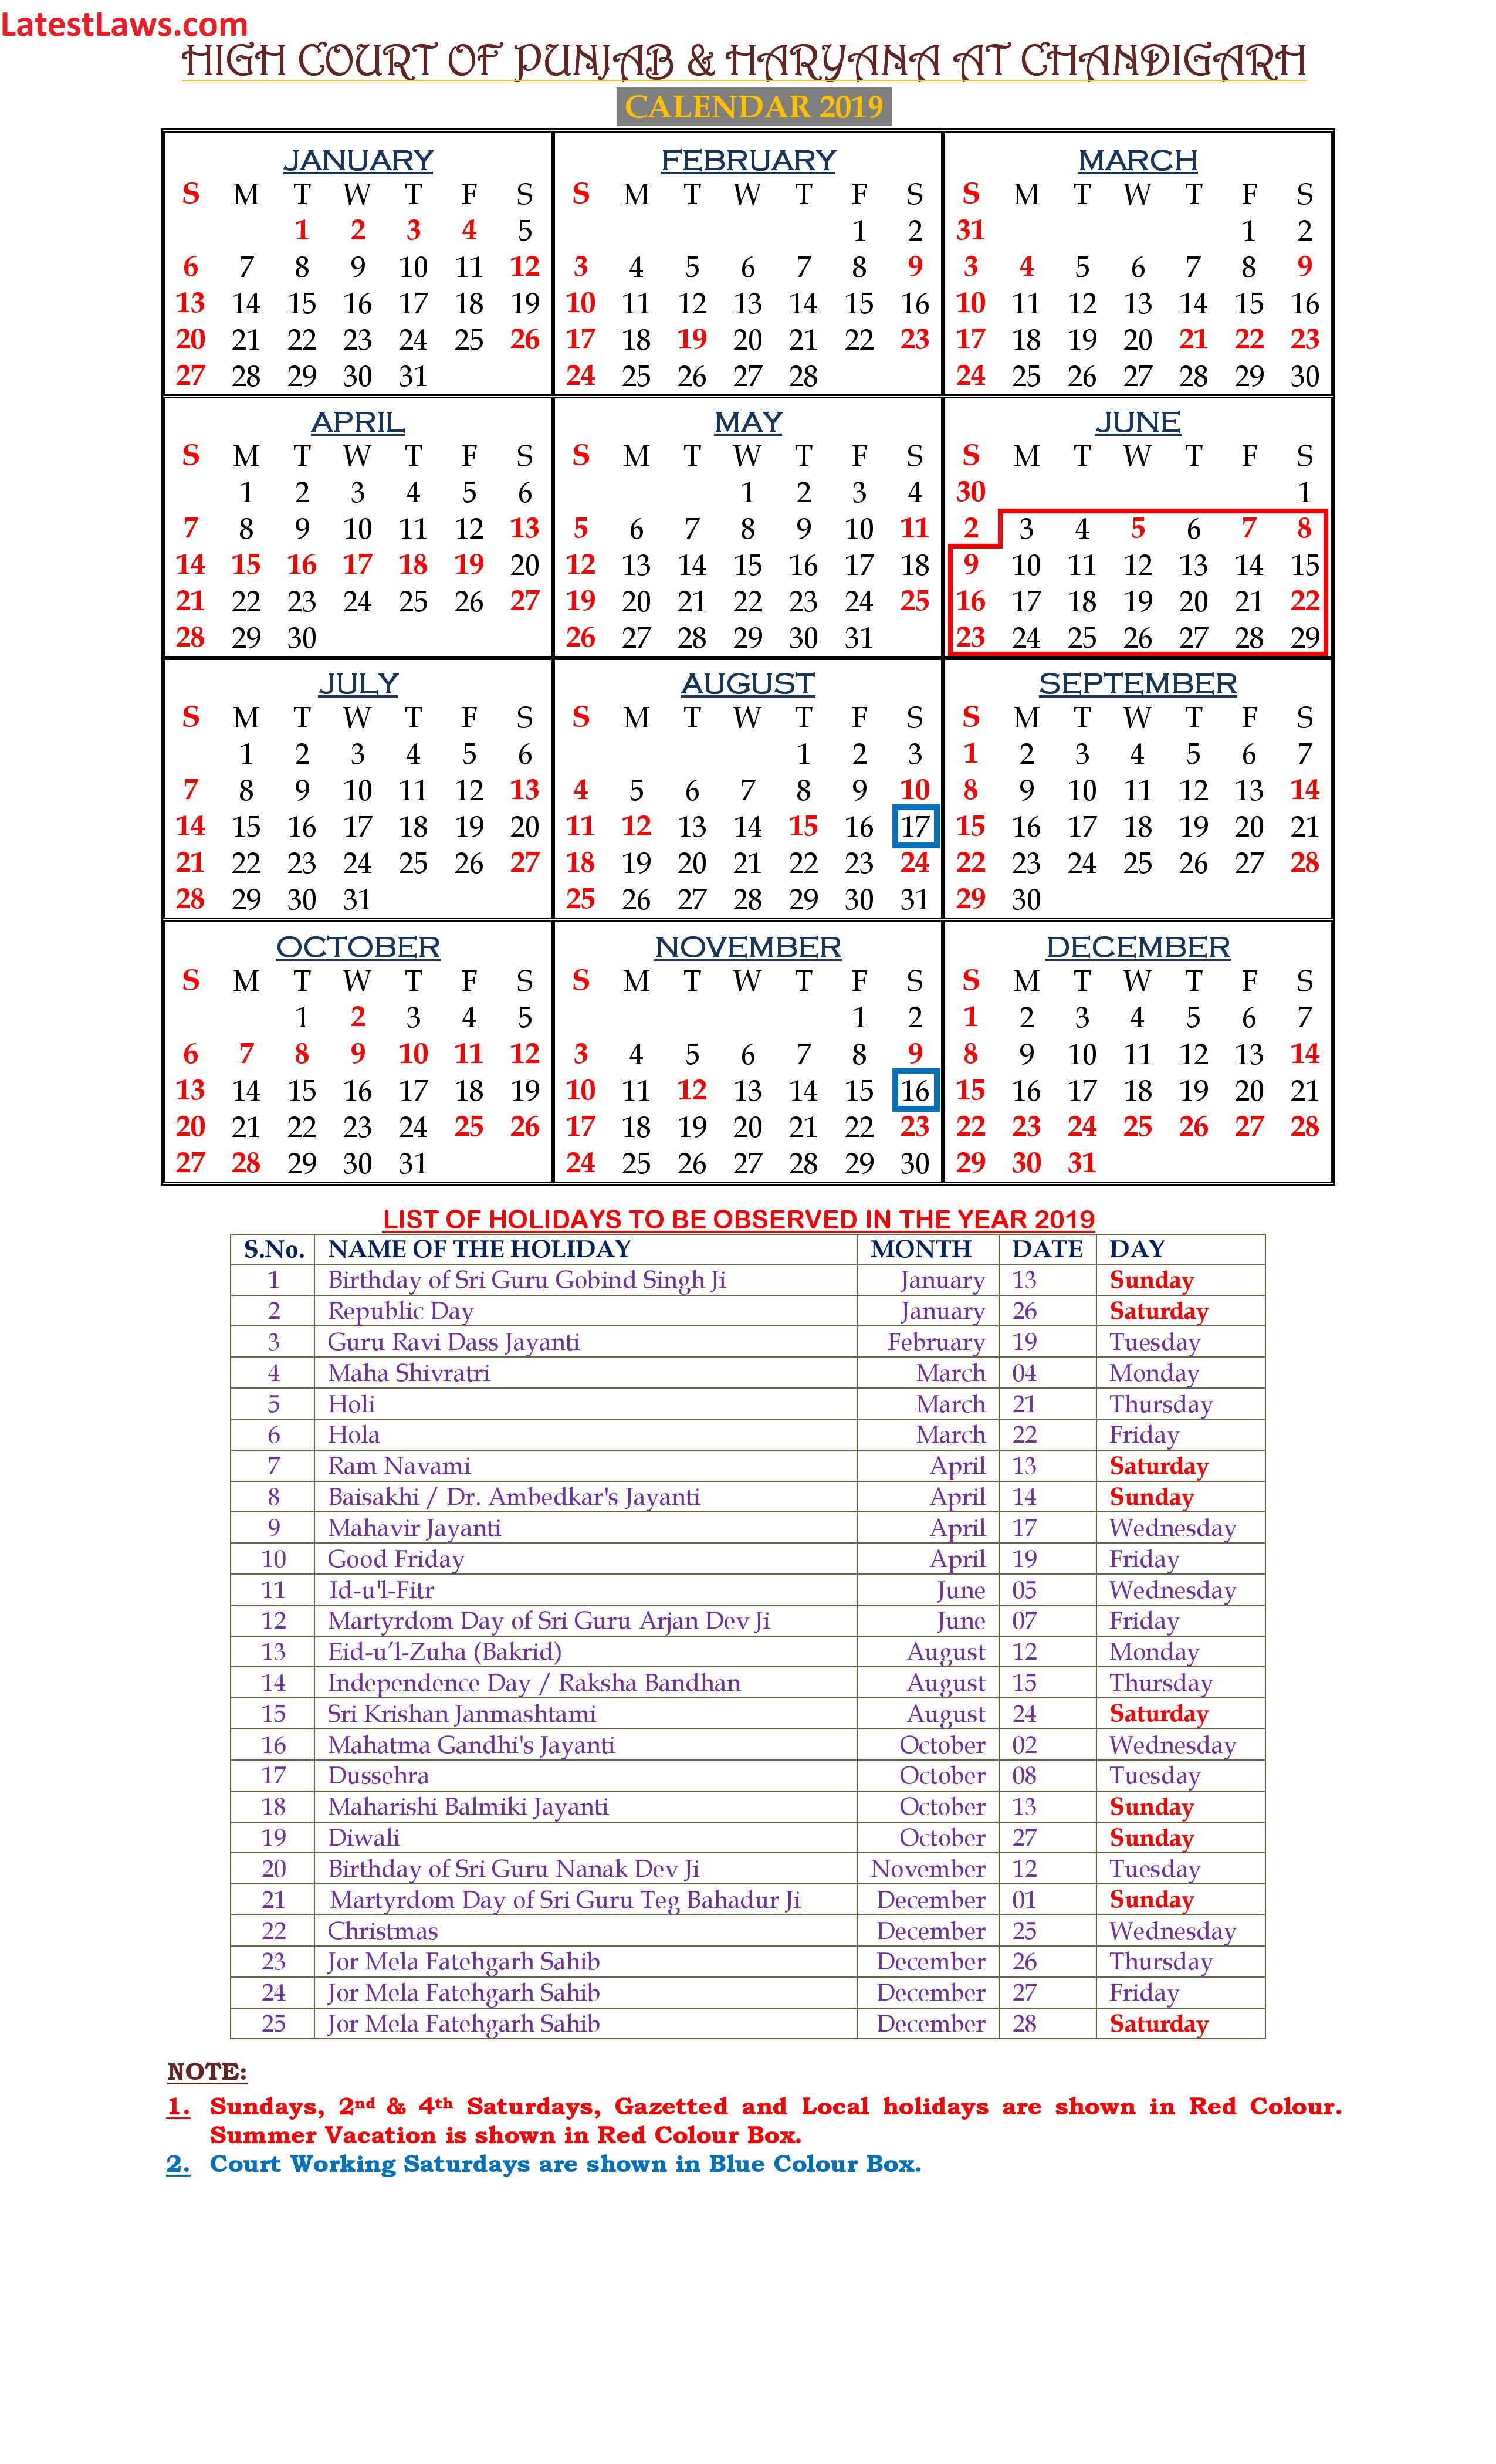 Haryana And Punjab High Court Calendar 2019 with Bihar Government Holiday Calendar 2020